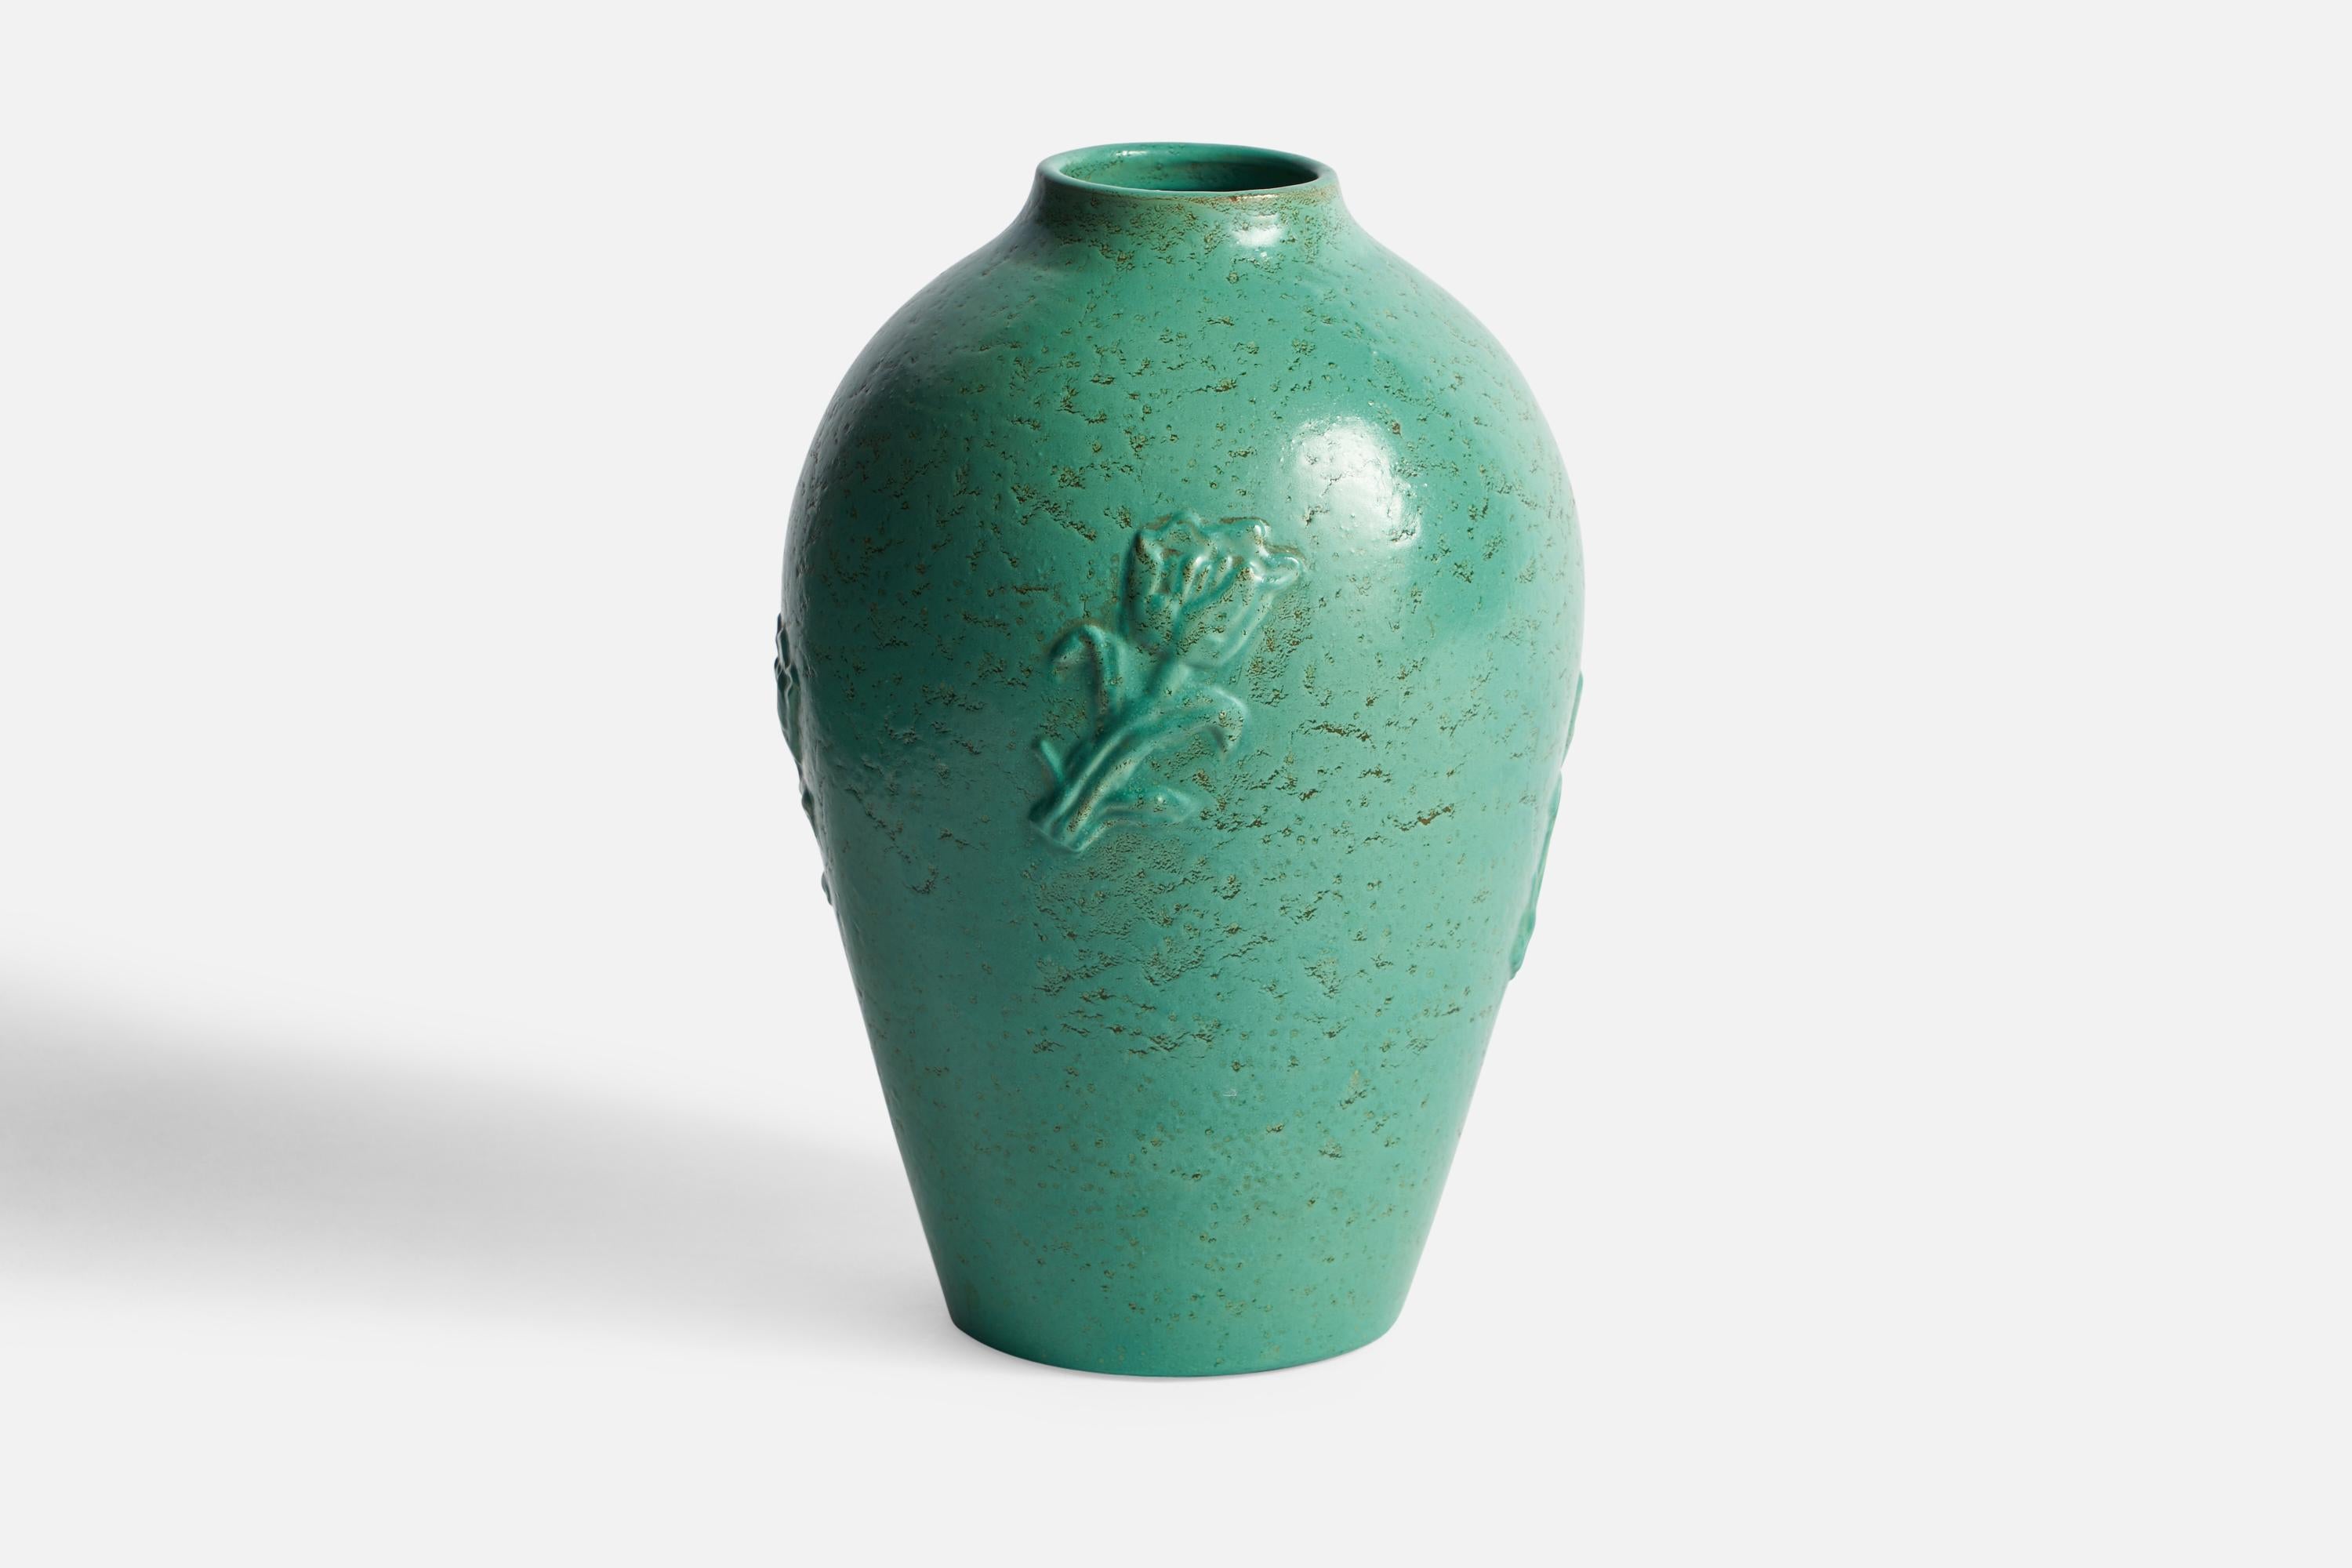 A green-glazed ceramic vase designed by Jerk Werkmäster and produced by Nittsjö, Sweden, c. 1930s.